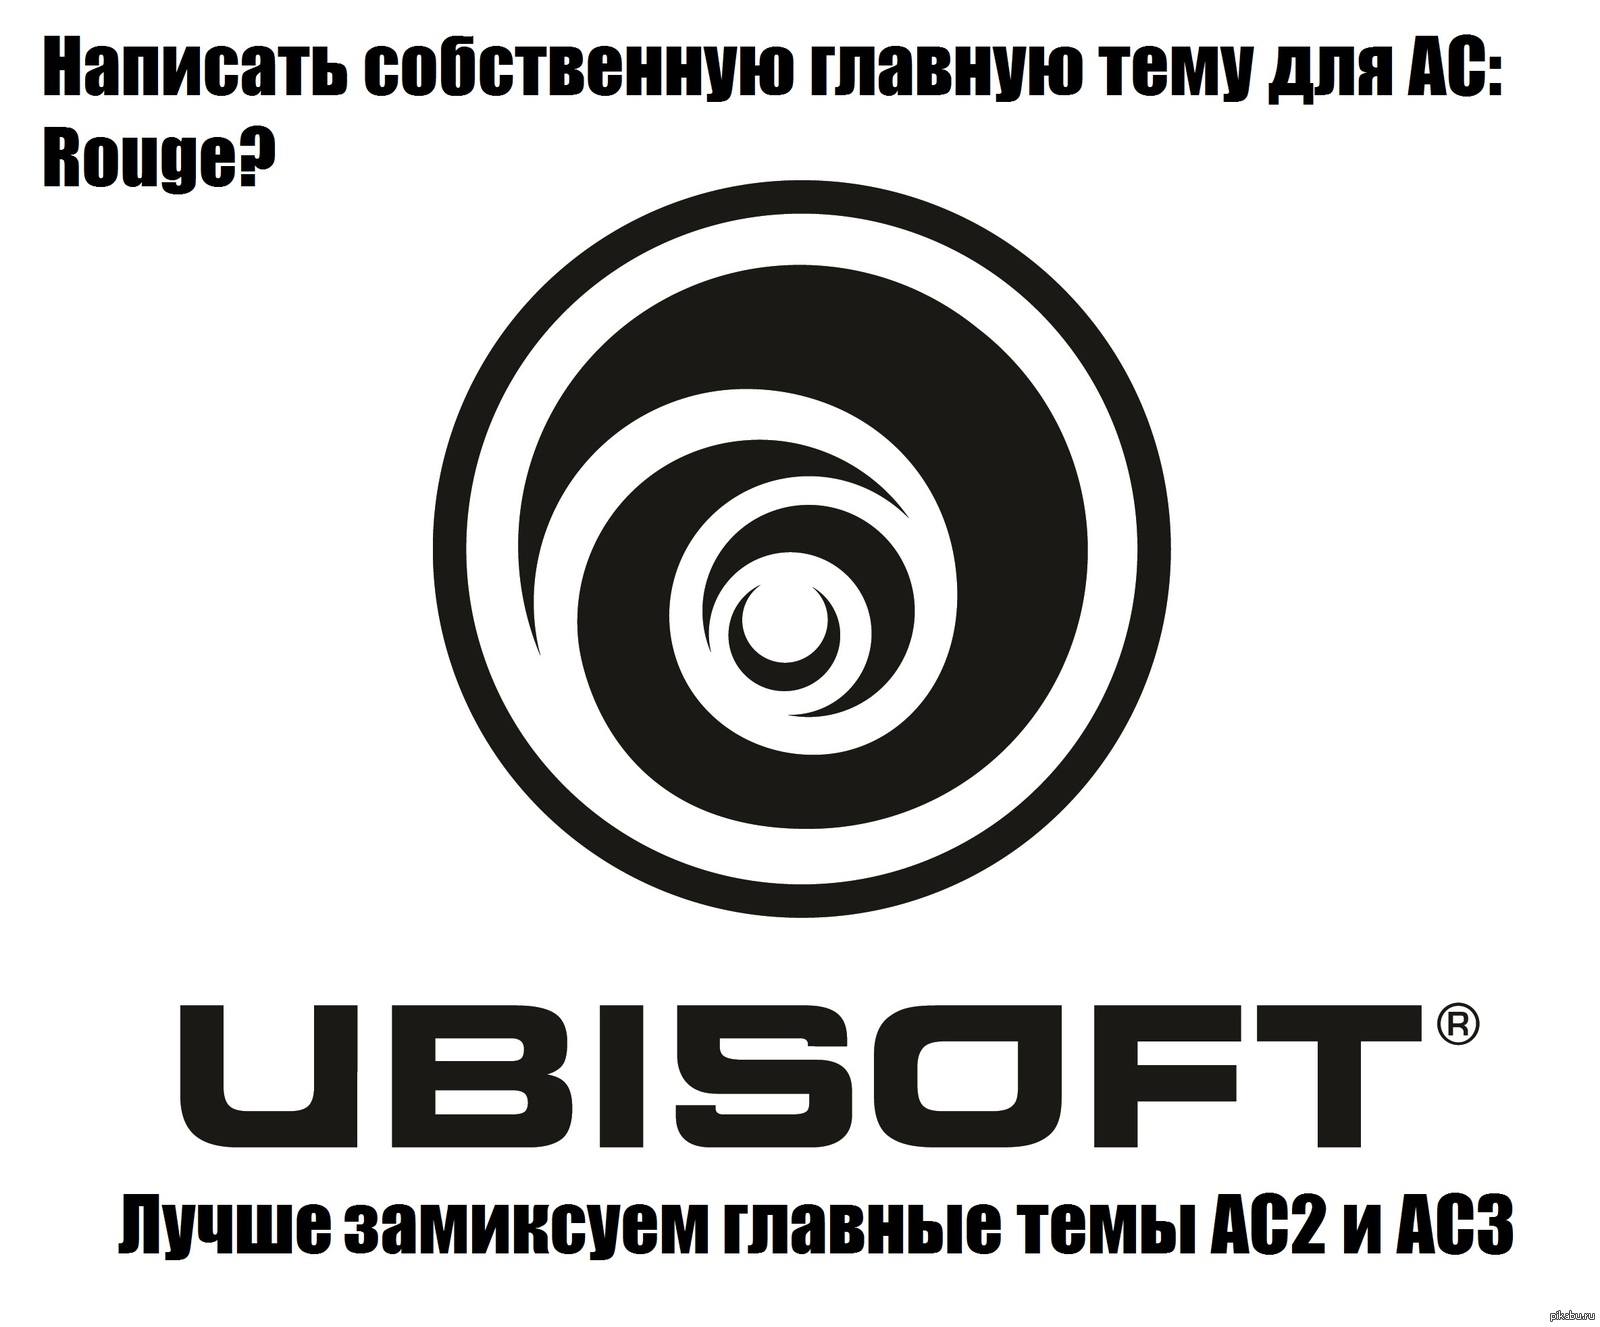 Игровые фирмы. Эмблема юбисофт. Старый логотип юбисофт. Логотипы игровых компаний. Старое лого Ubisoft.